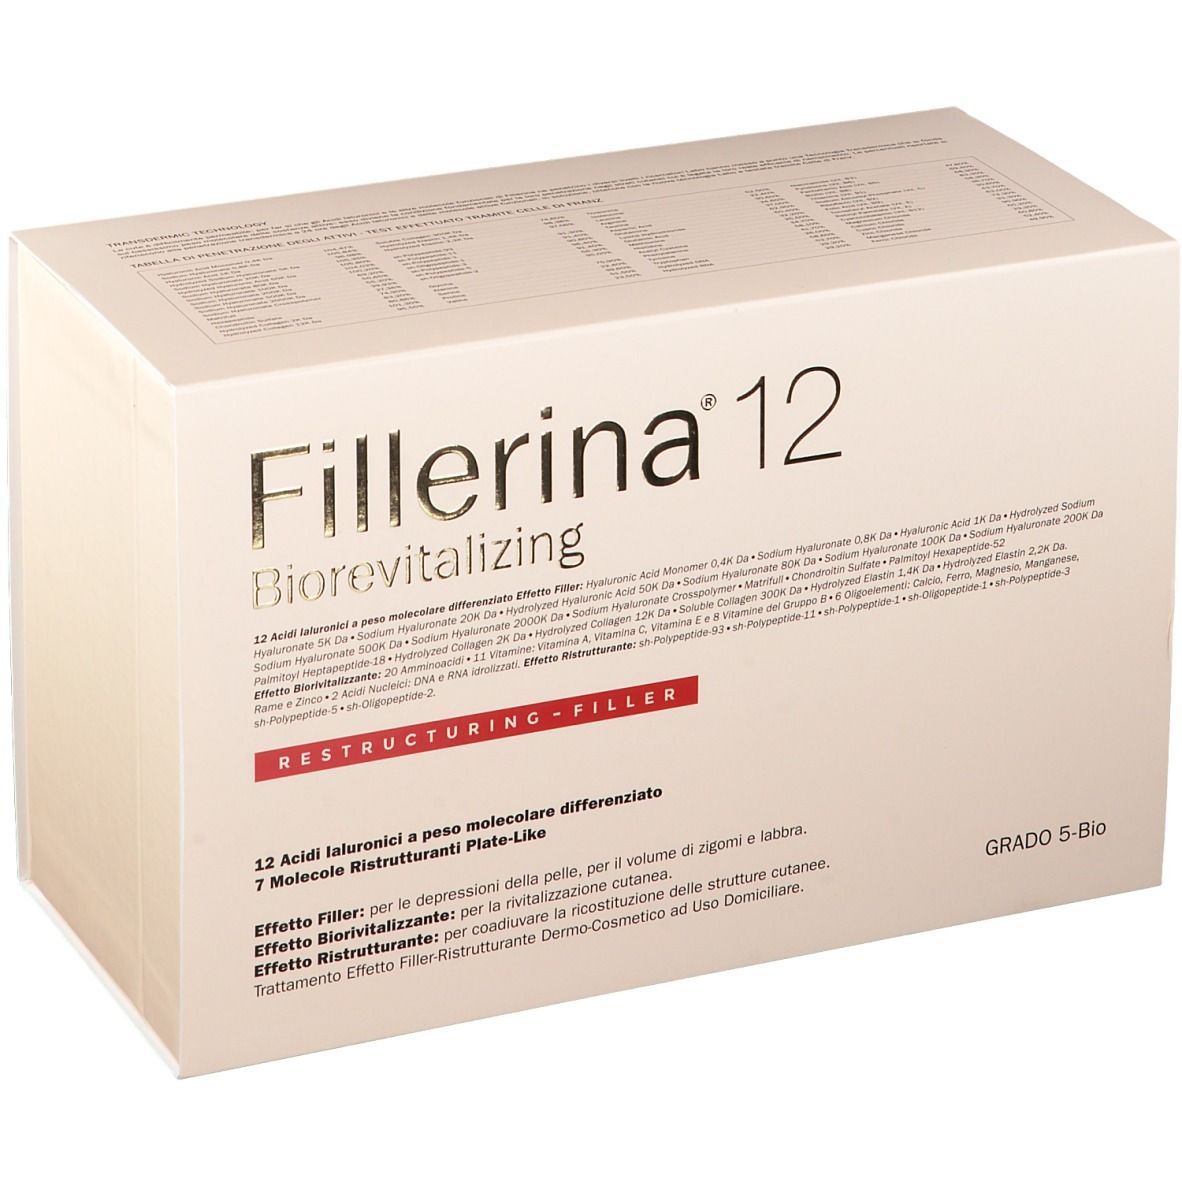 Image of Fillerina® 12 Biorevitalizing Restructuring Filler Grad 5